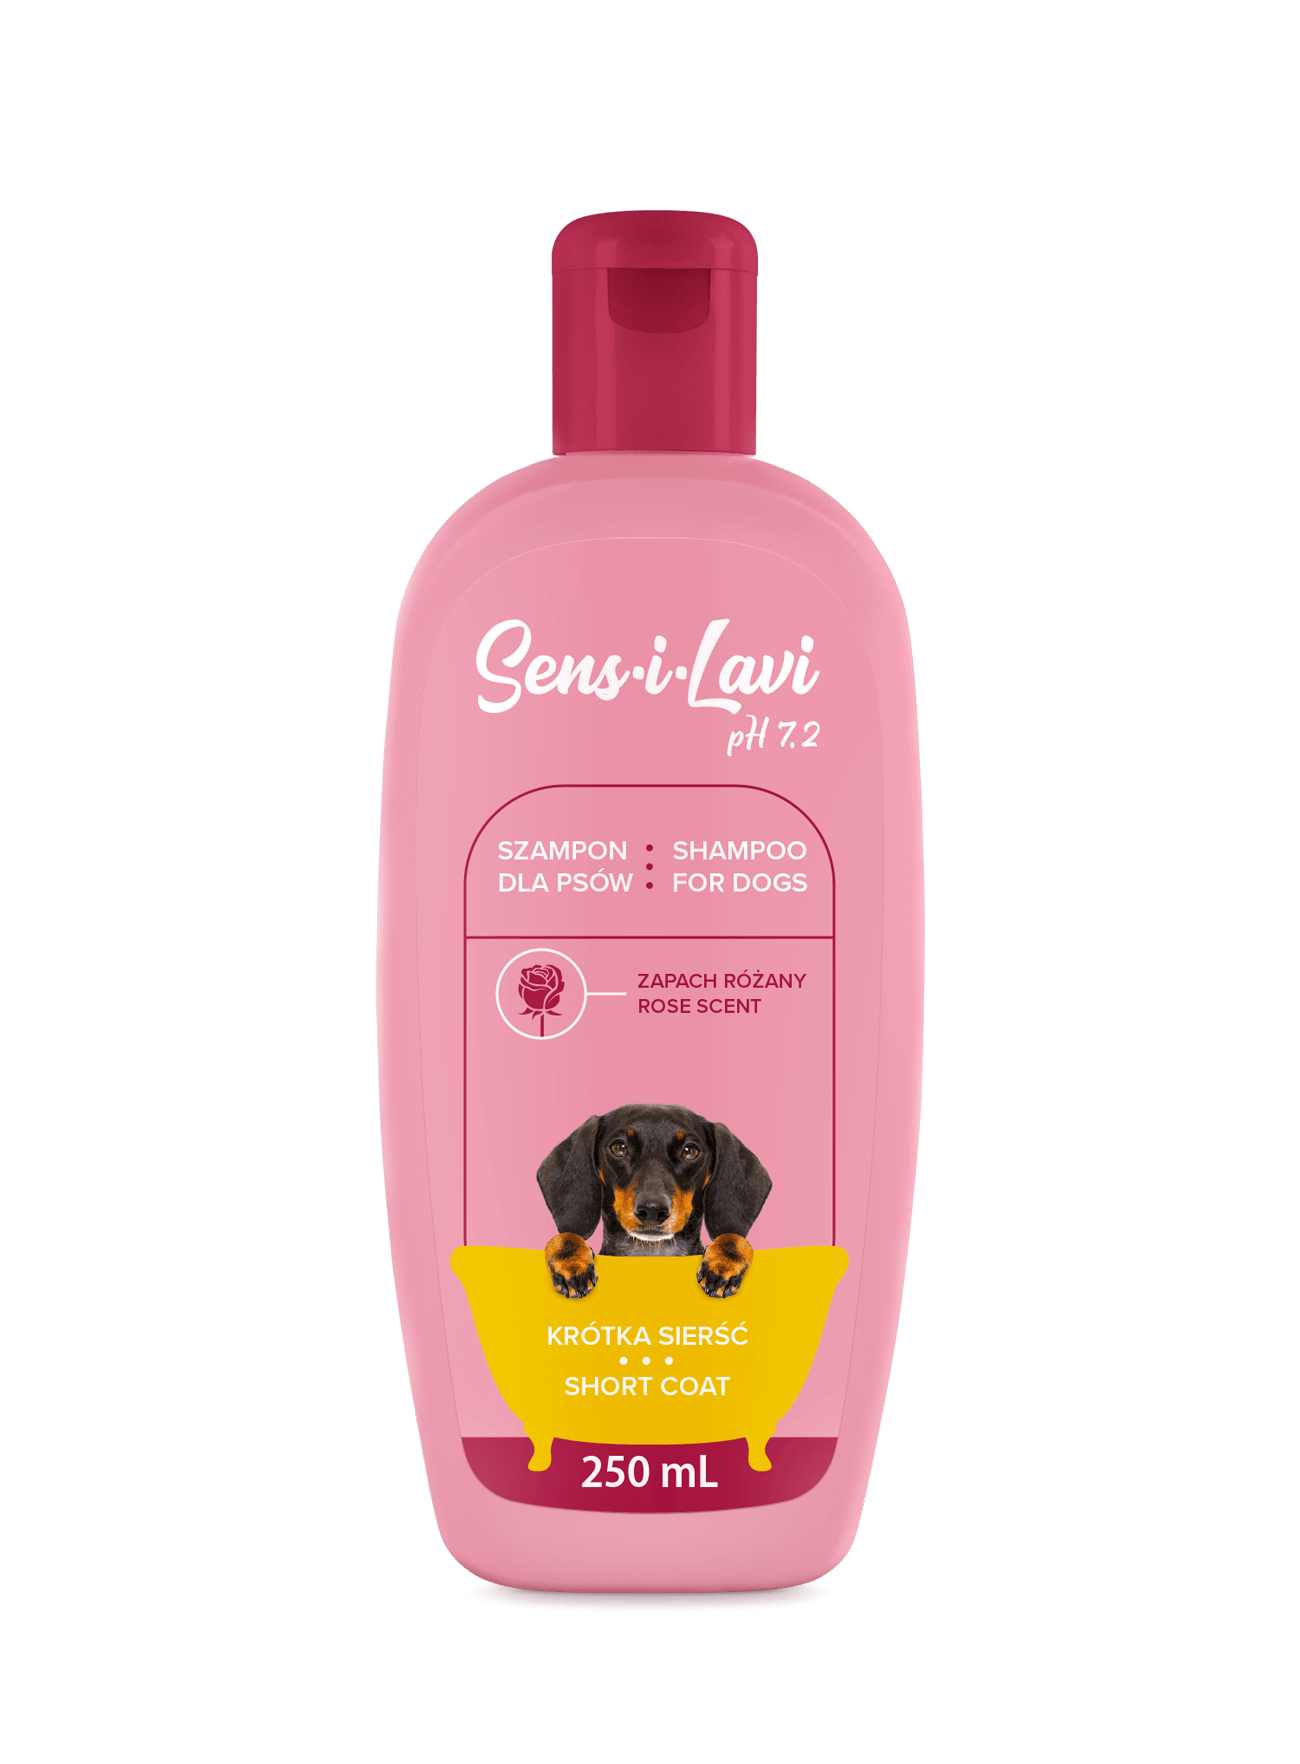 shineline szampon dla psów z długą sierścią skład